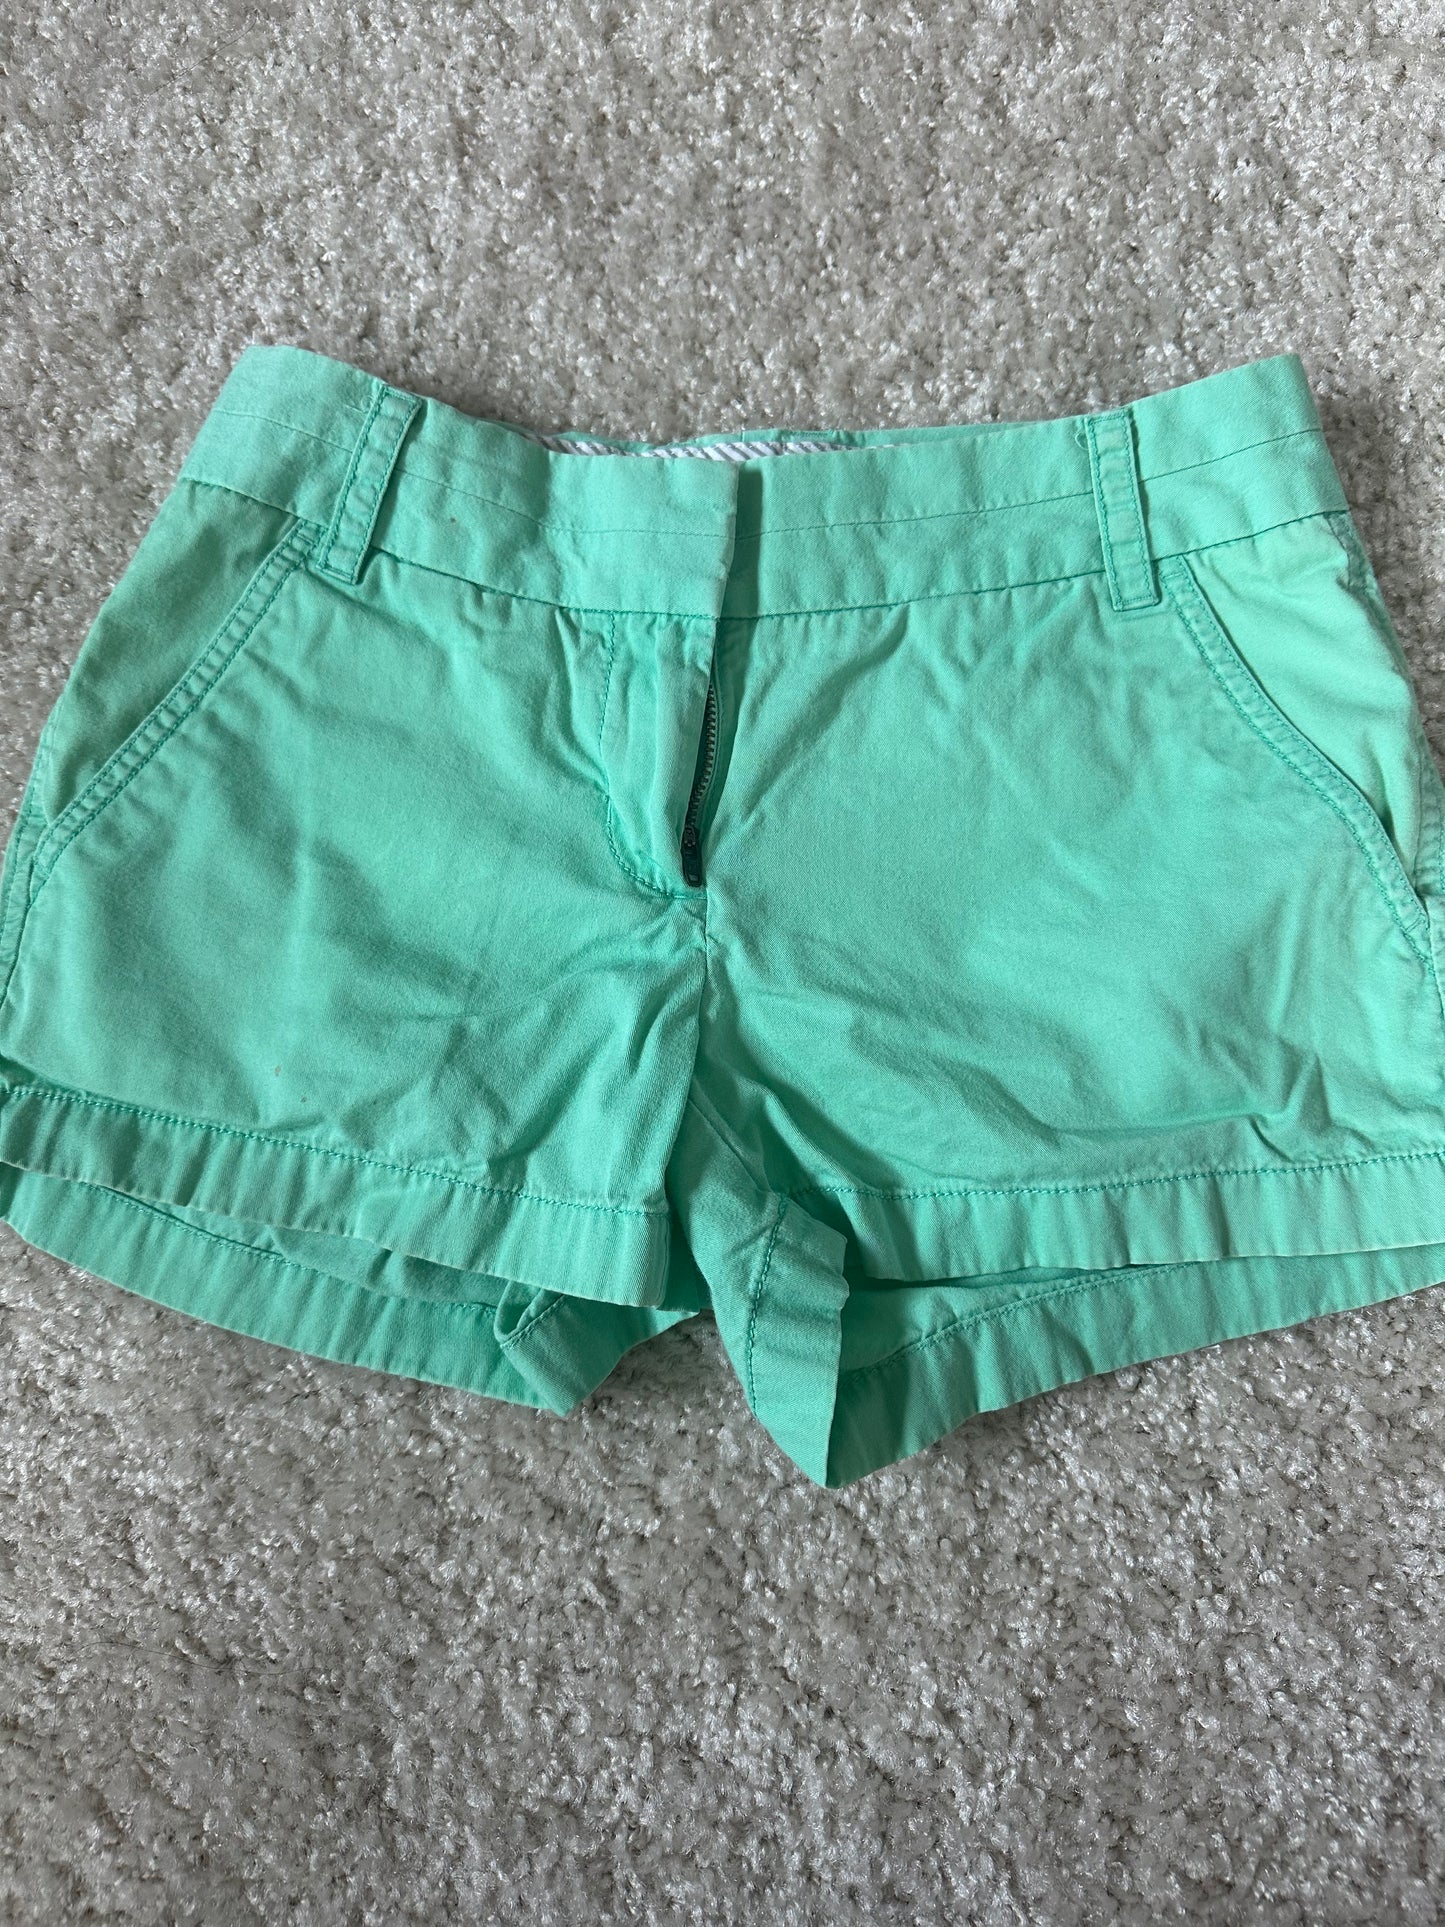 Women's J. Crew 00 Turquoise Chino Shorts